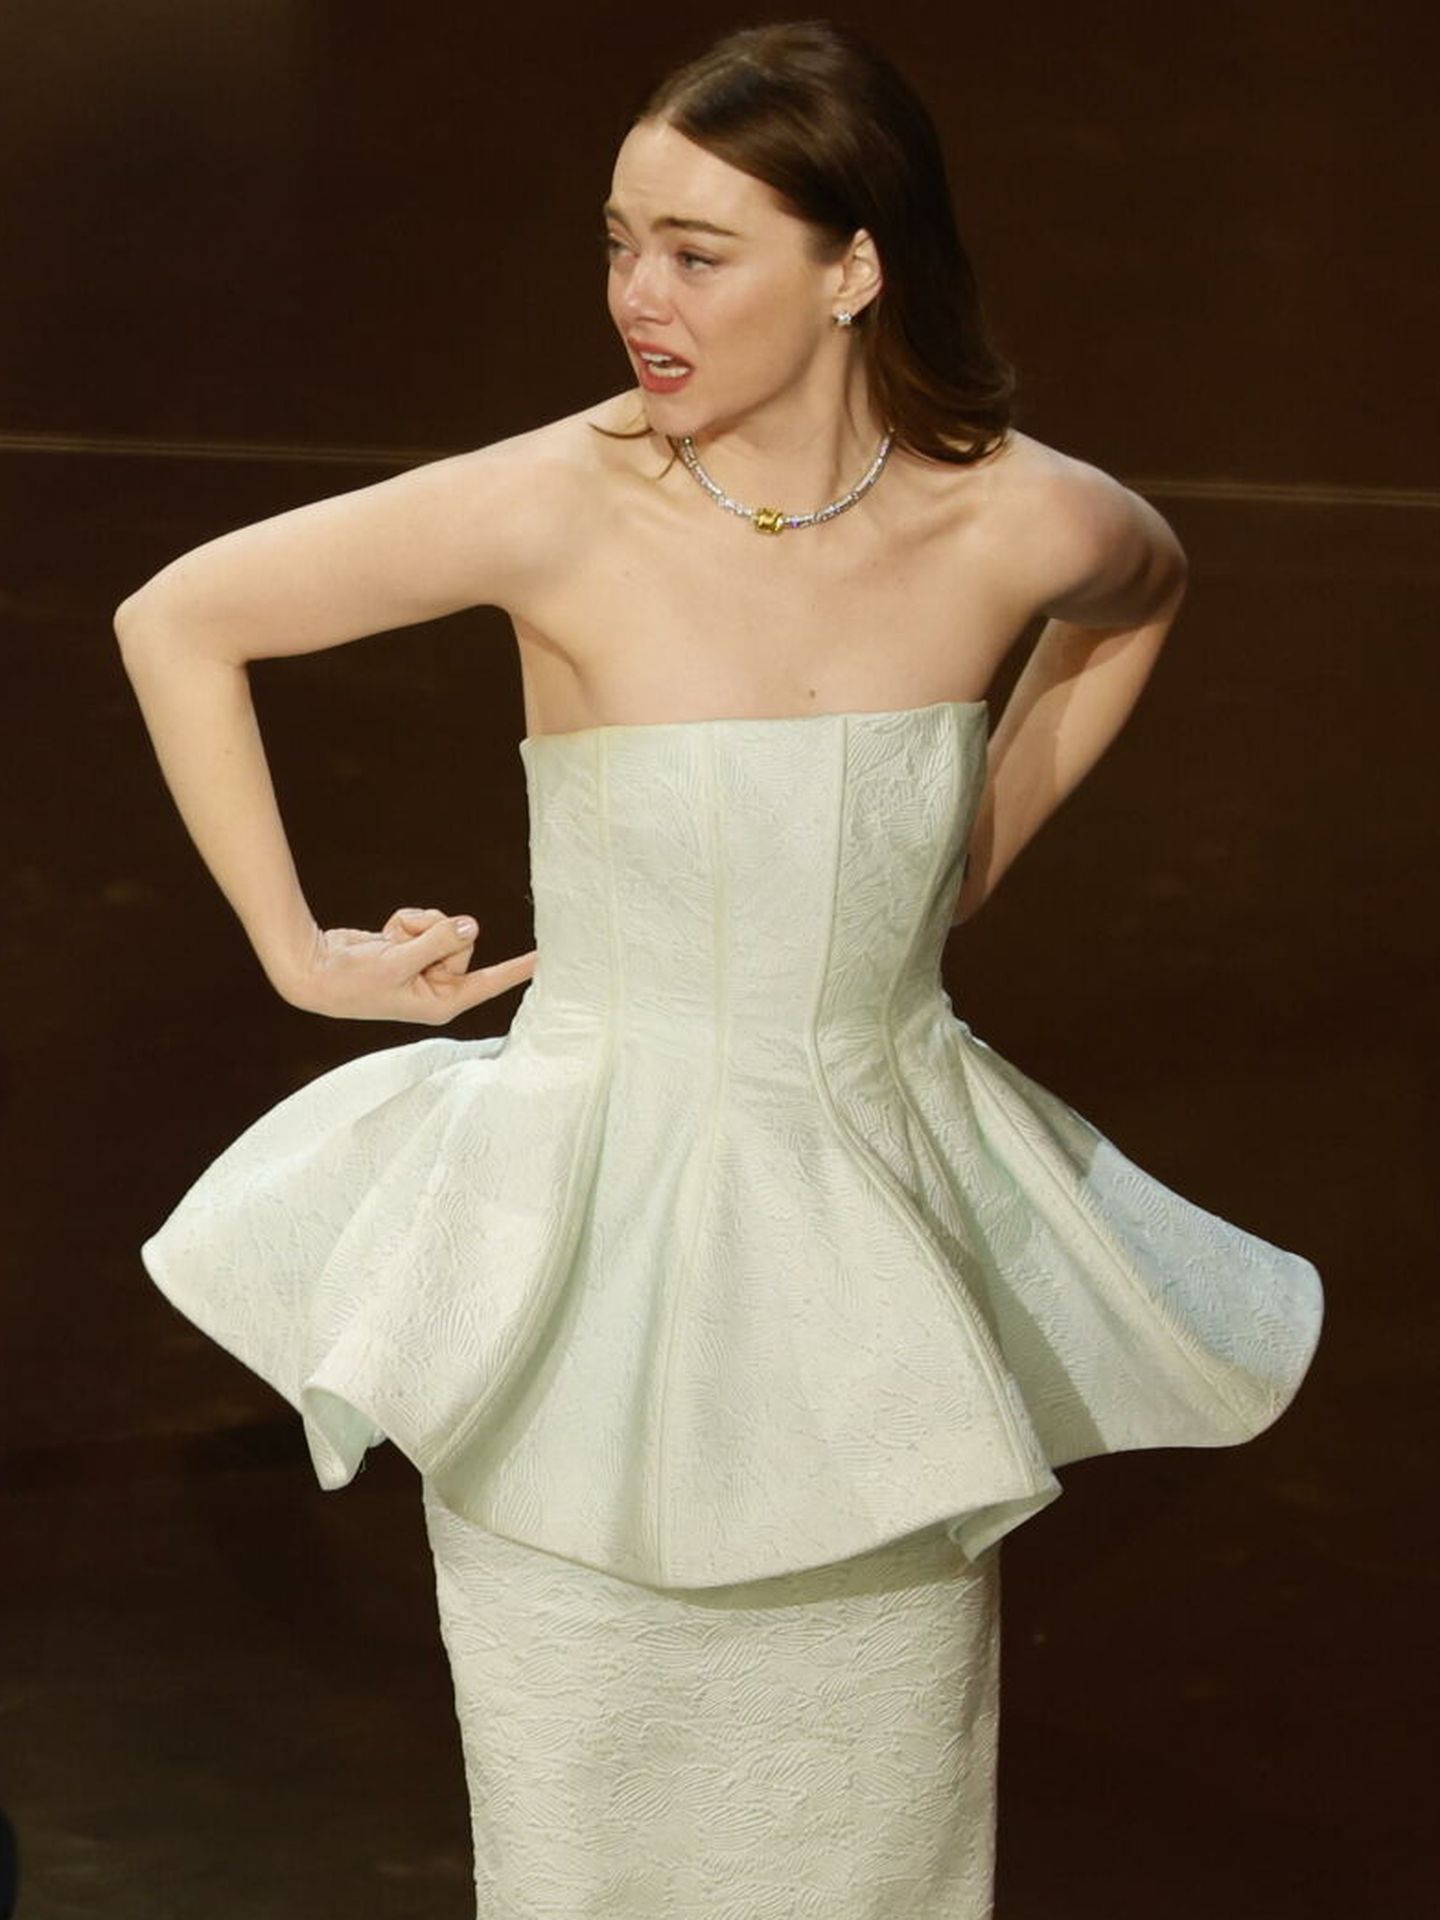 Emma Stone, al subir a recoger su premio Oscar, nota que su cremallera se ha roto. (EFE)